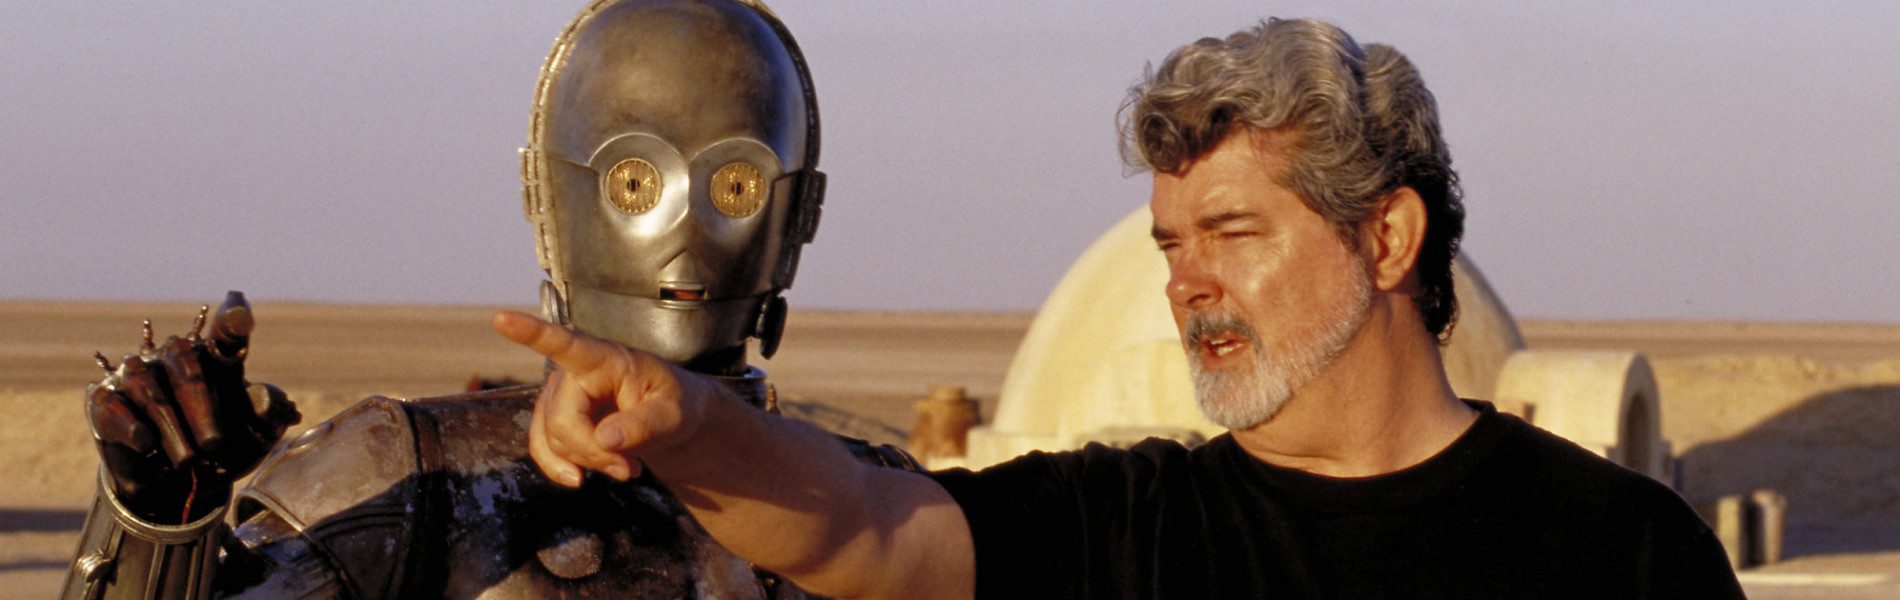 George Lucas érdekességek